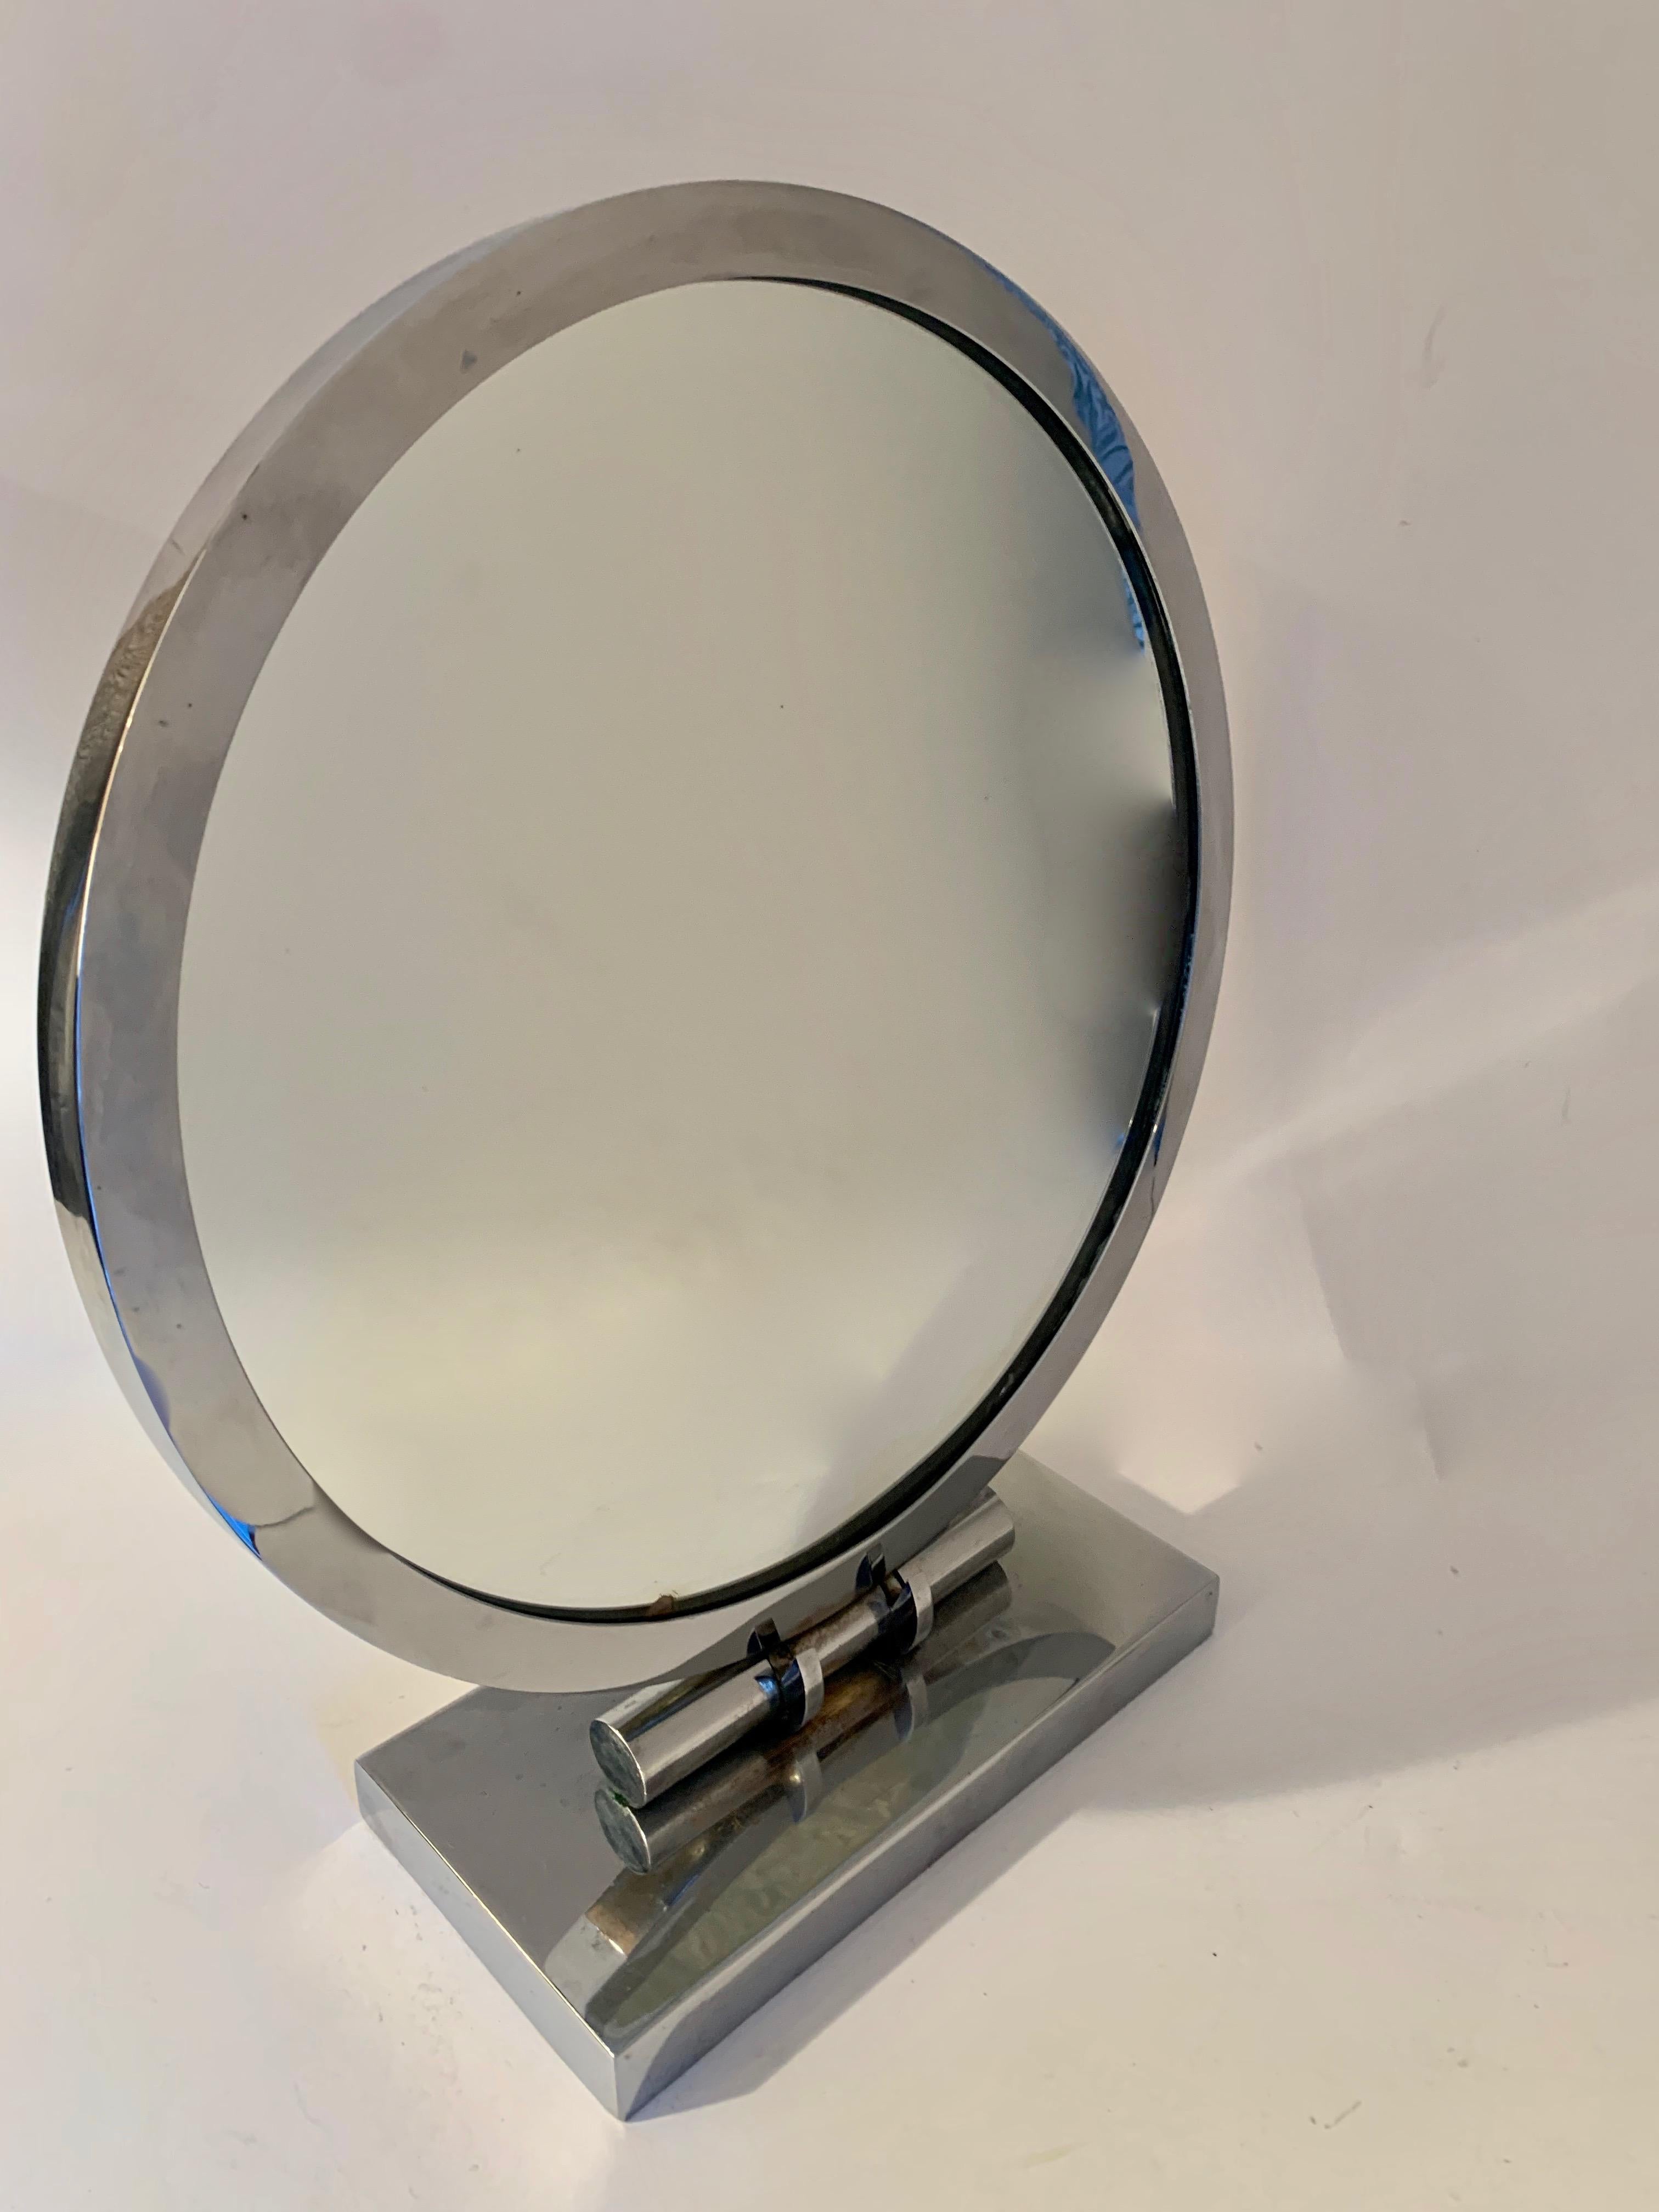 Miroir de courtoisie réglable Art Déco - chromé. Le miroir est unilatéral et présente une petite imperfection sur la partie inférieure du miroir. La base est dotée d'une fonction réglable très agréable qui fonctionne bien. La base présente quelques